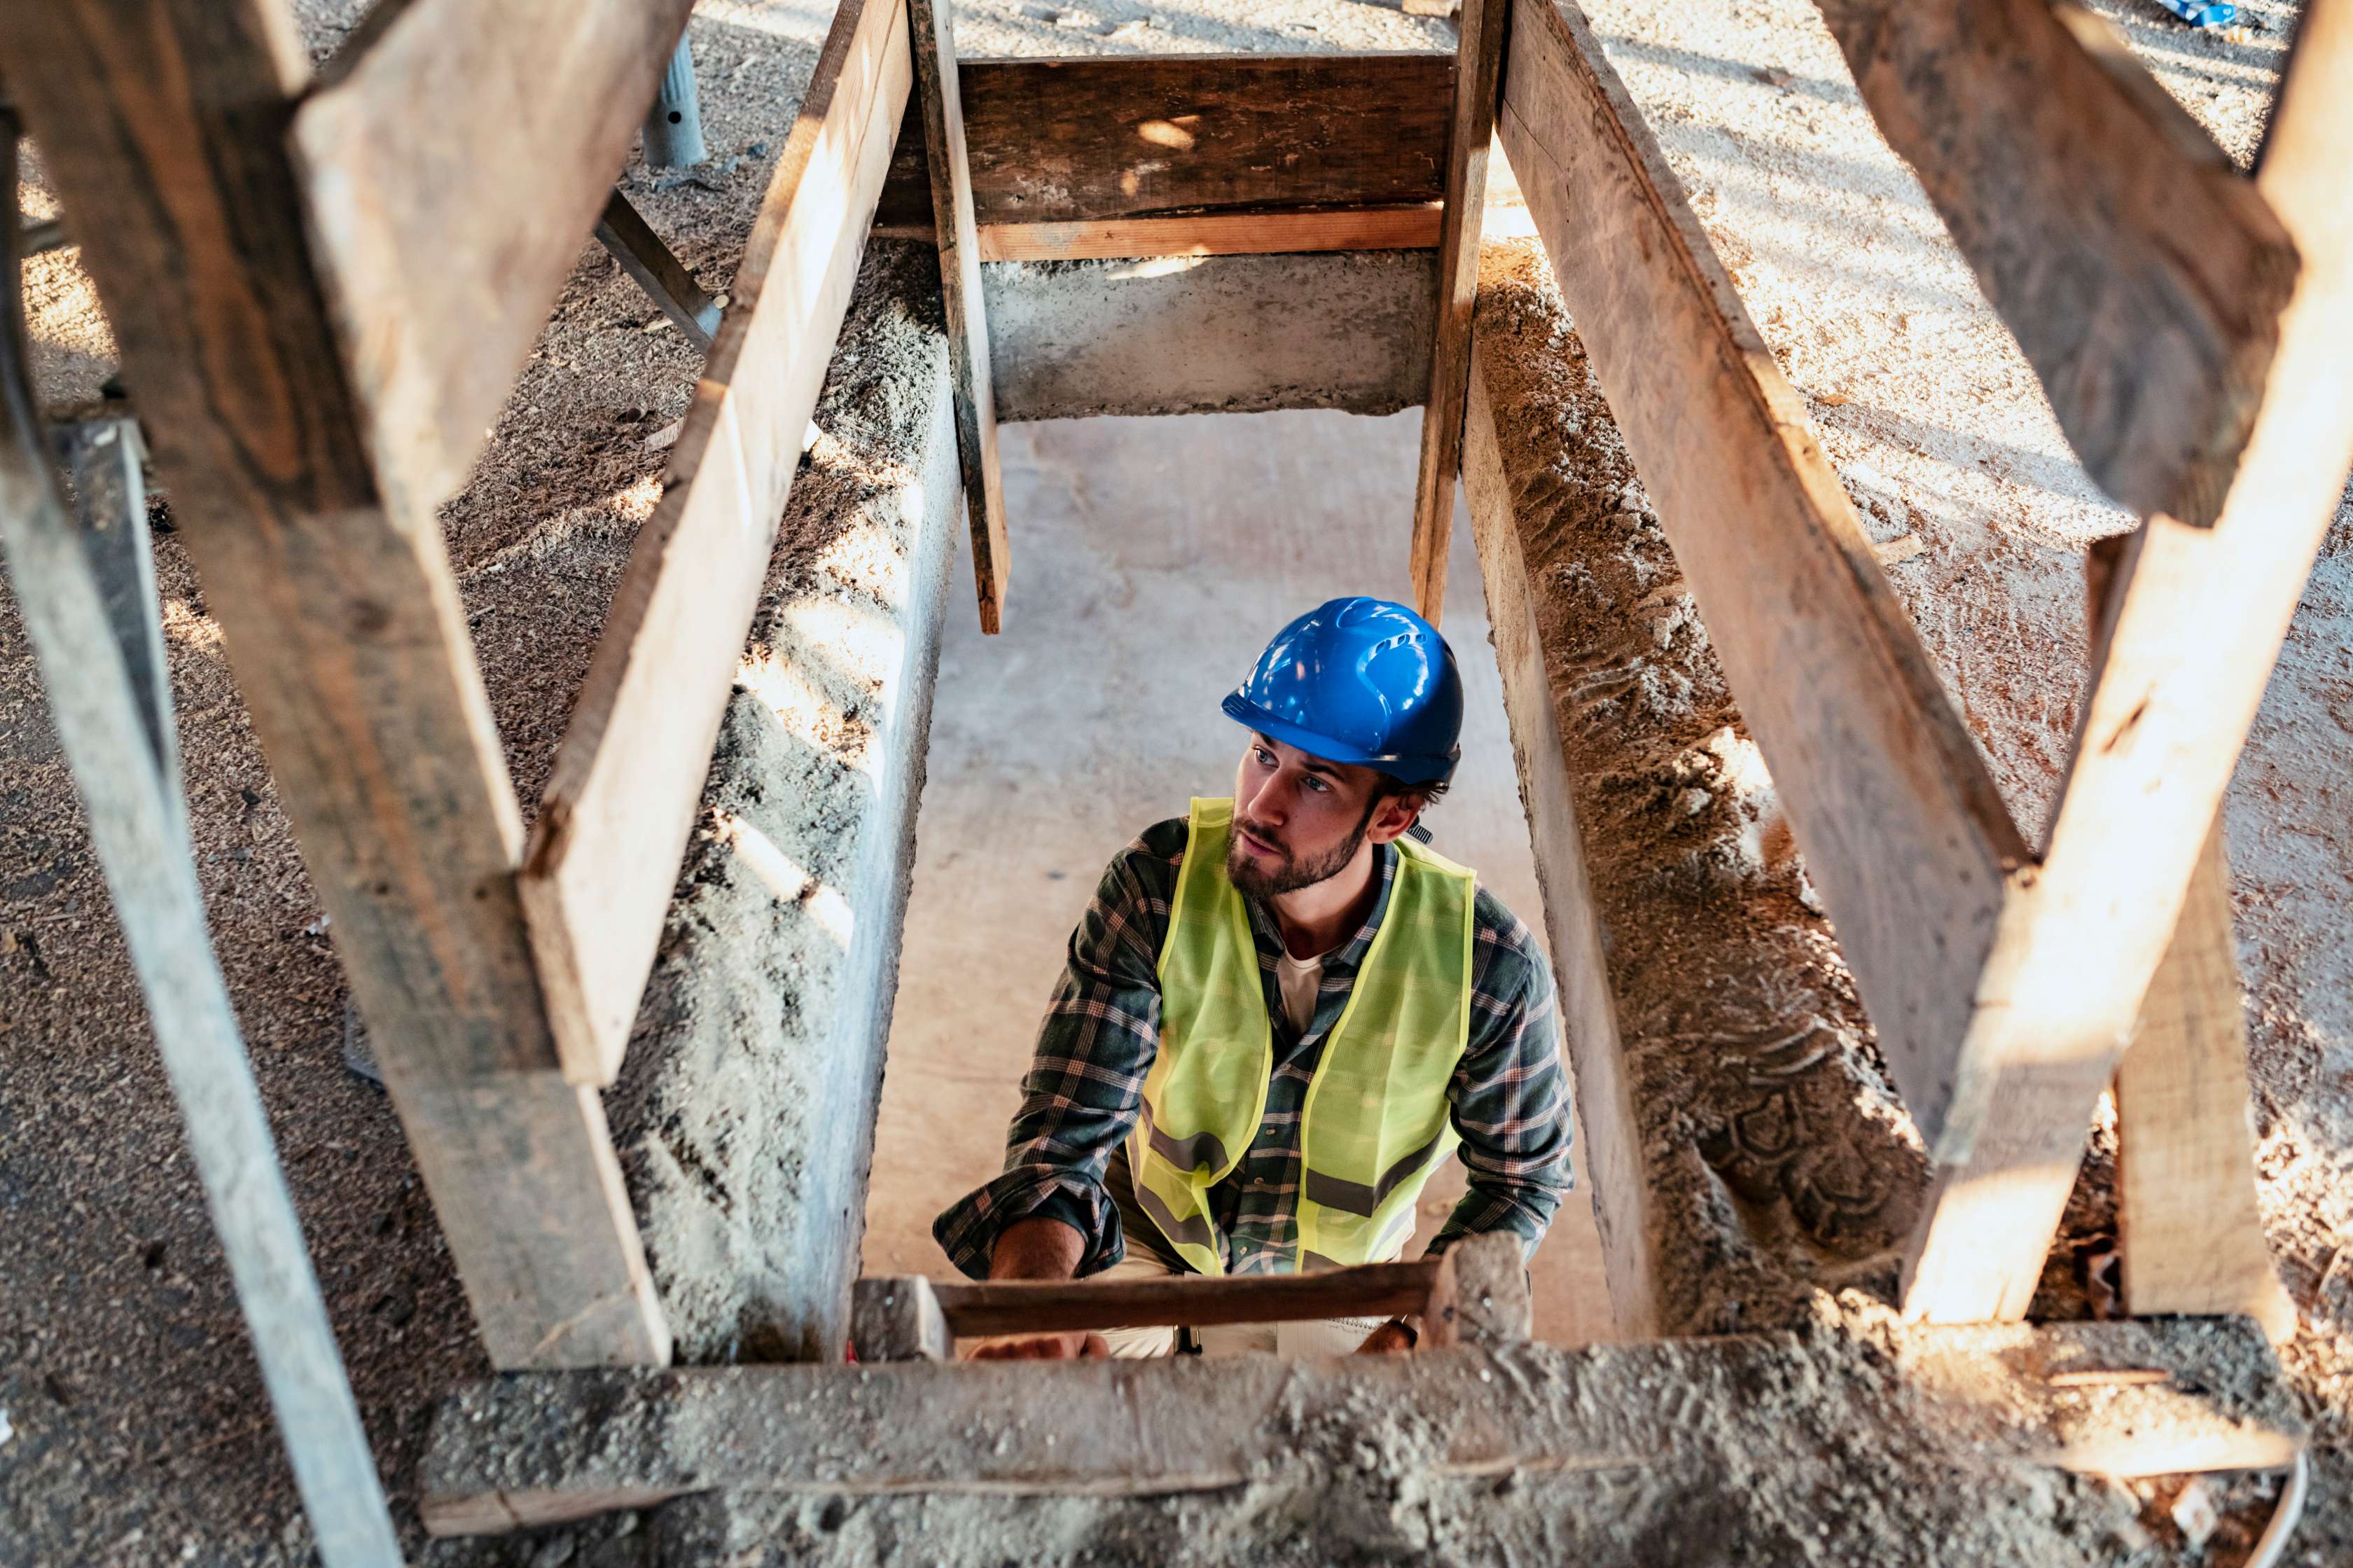 Allianz - Unfallversicherung Gefahrengruppen: Bauarbeiter klettert auf Baustelle die Leiter hoch